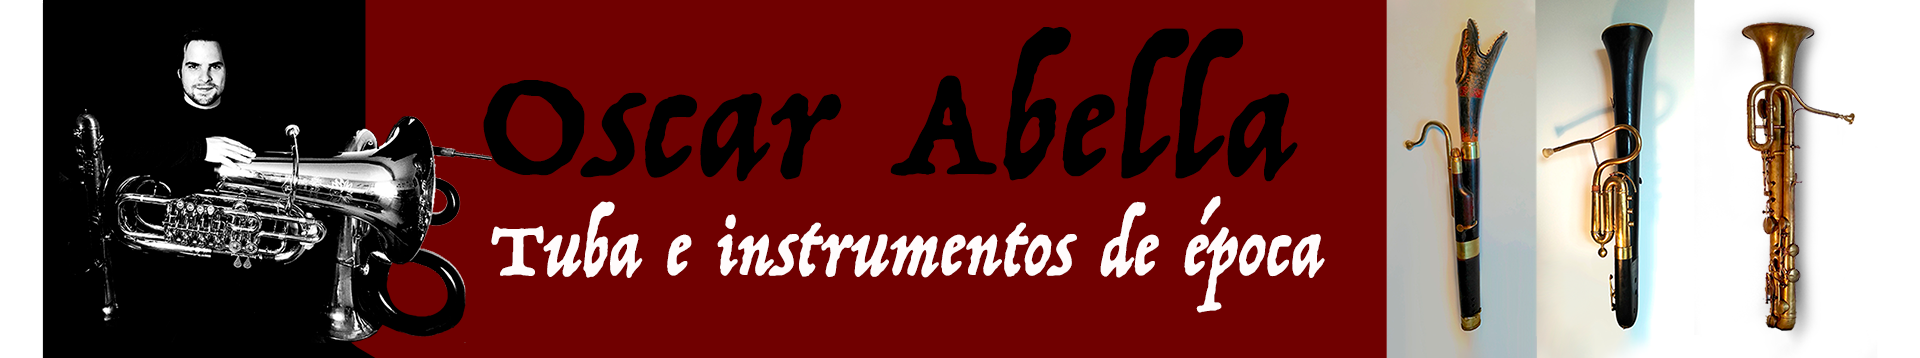 Oscar Abella - Tuba e instrumentos de época